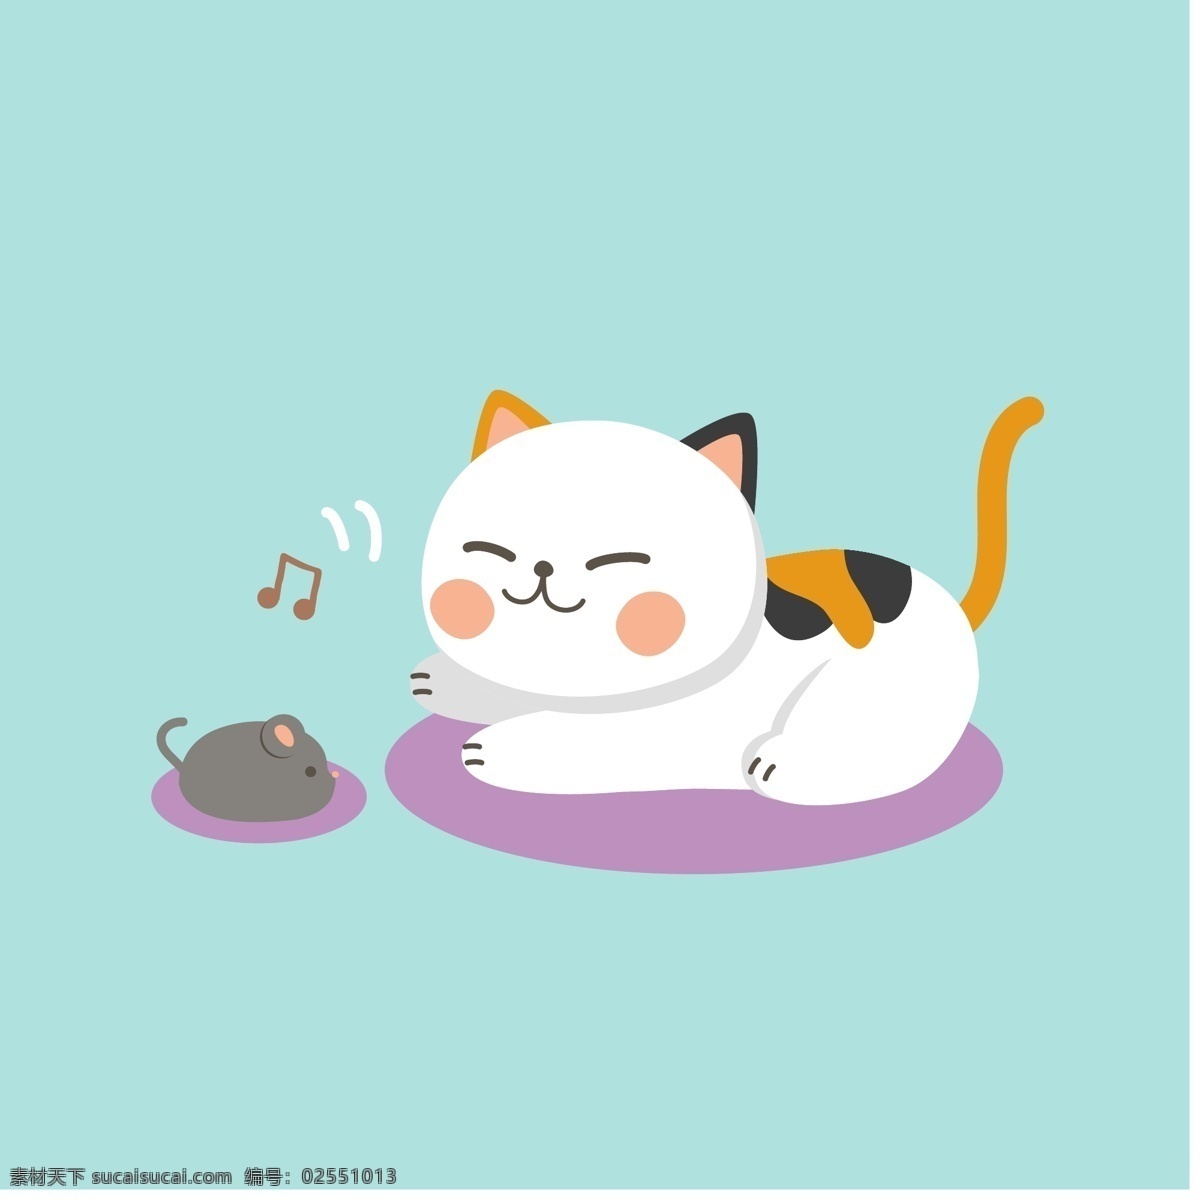 卡通猫 猫咪 猫 小猫 卡通 可爱 小猫咪 儿童 手机壳 抱枕 墙贴纸 装饰插画 矢量图案 卡通动物